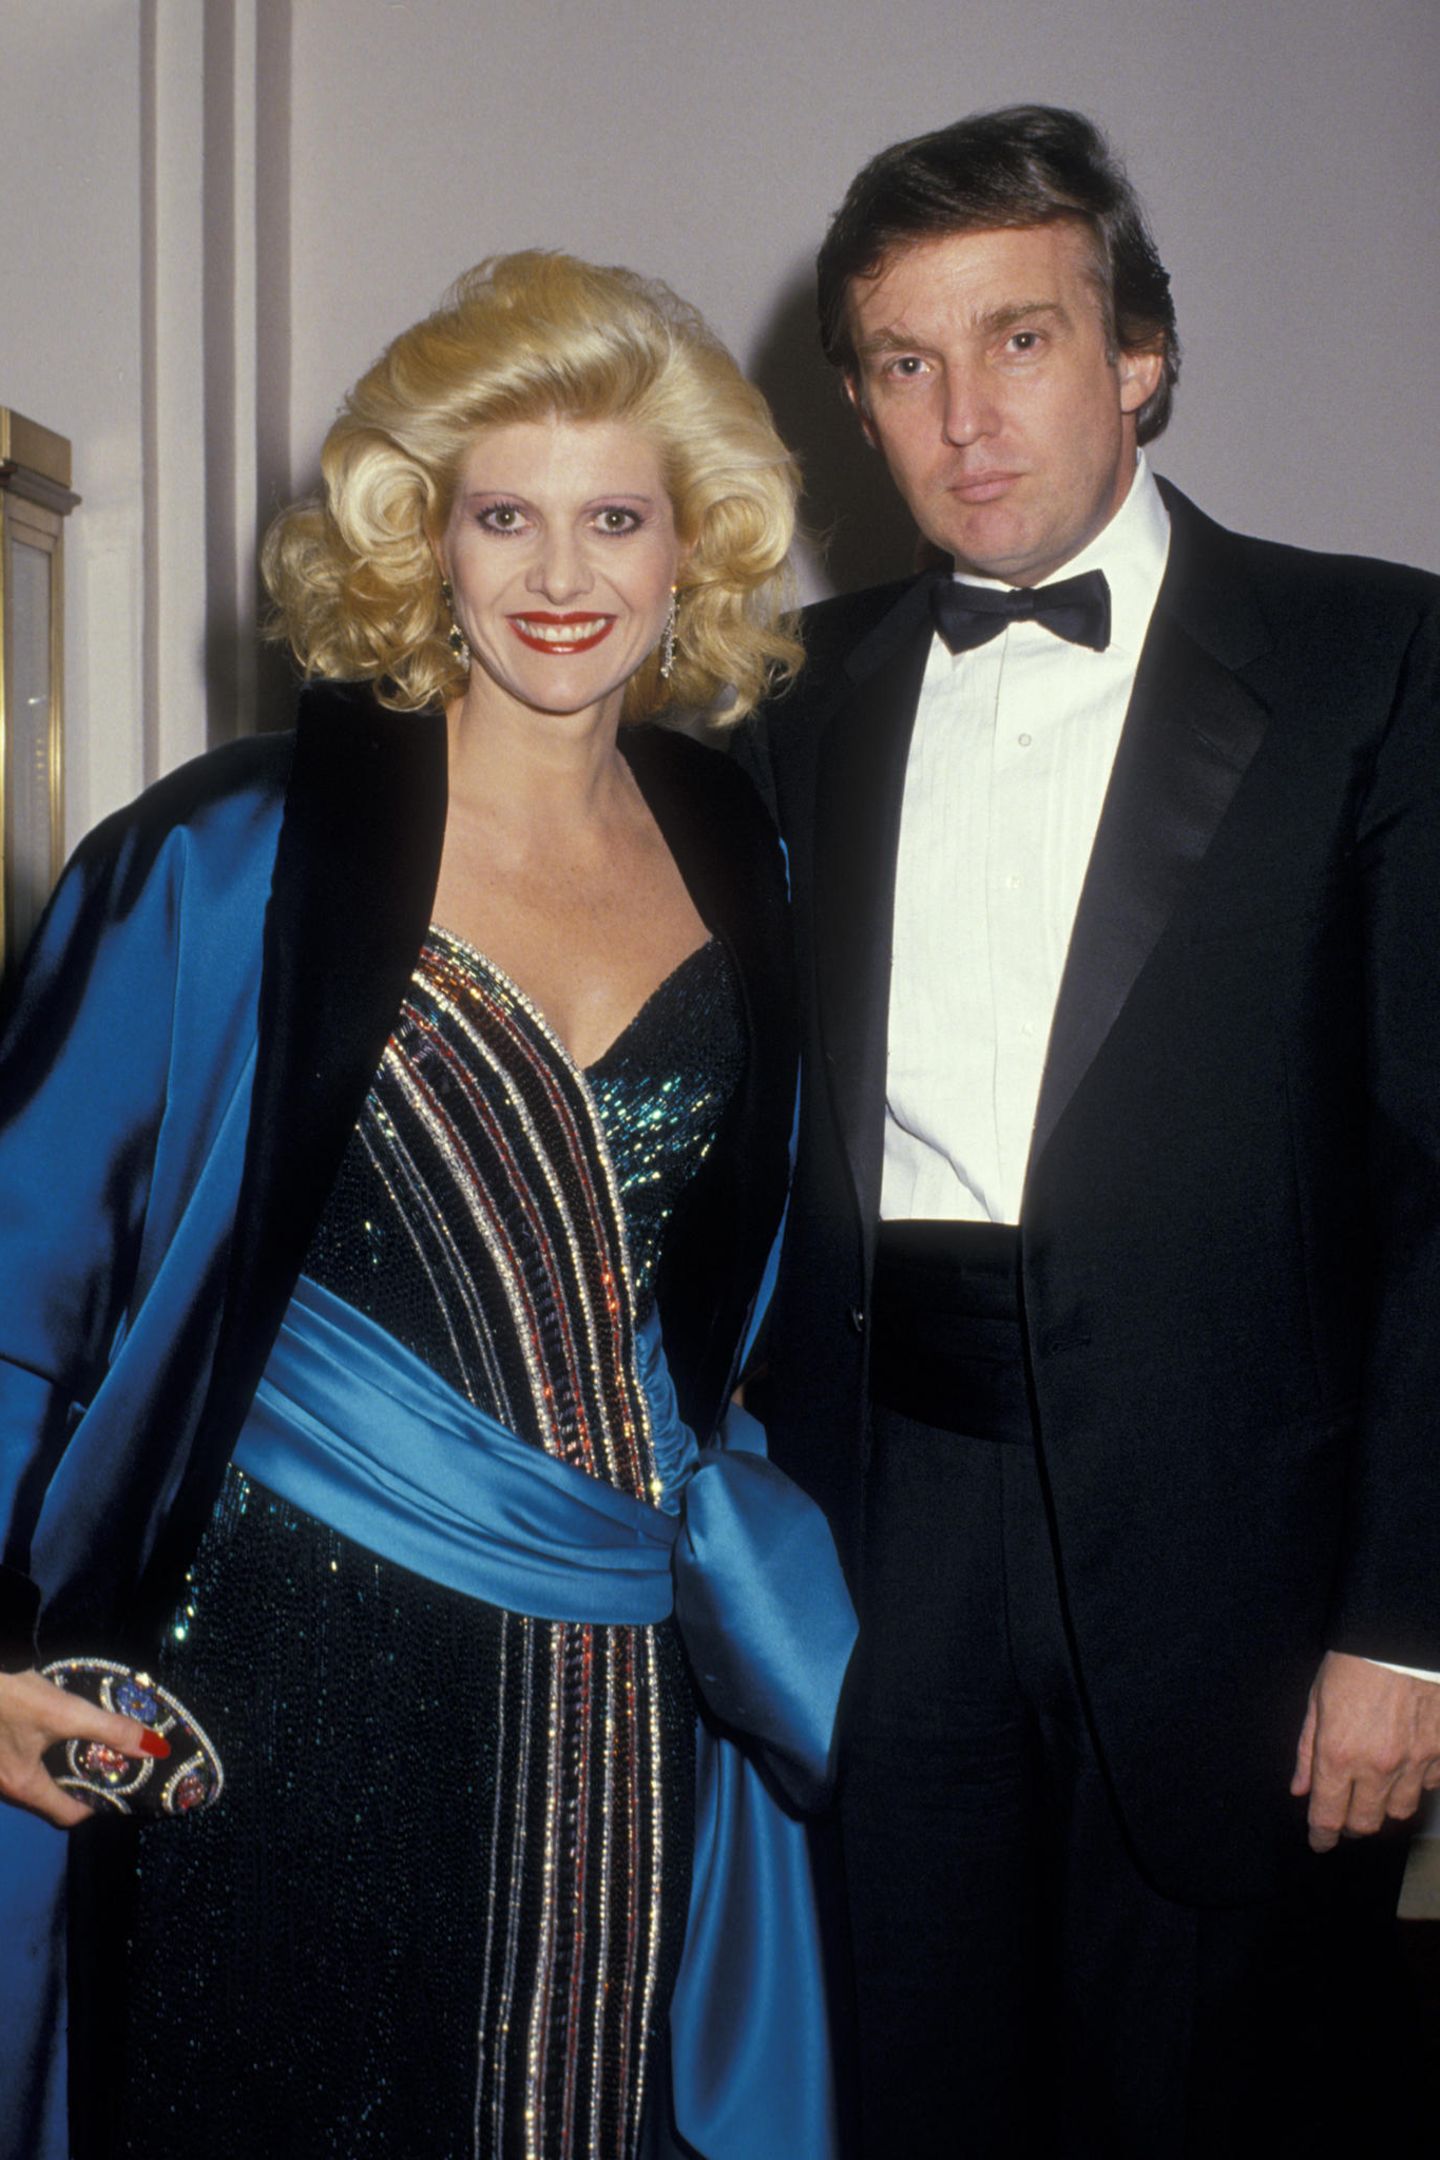 Donald Trump und seine erste Frau Ivana Trump: Ihre gemeinsamen Kinder Eric, Ivanka und Donald Jr. sind mittlerweile alle ins Familienunternehmen eingestiegen. Ihre Ehe hielt von 1977 bis 1992.